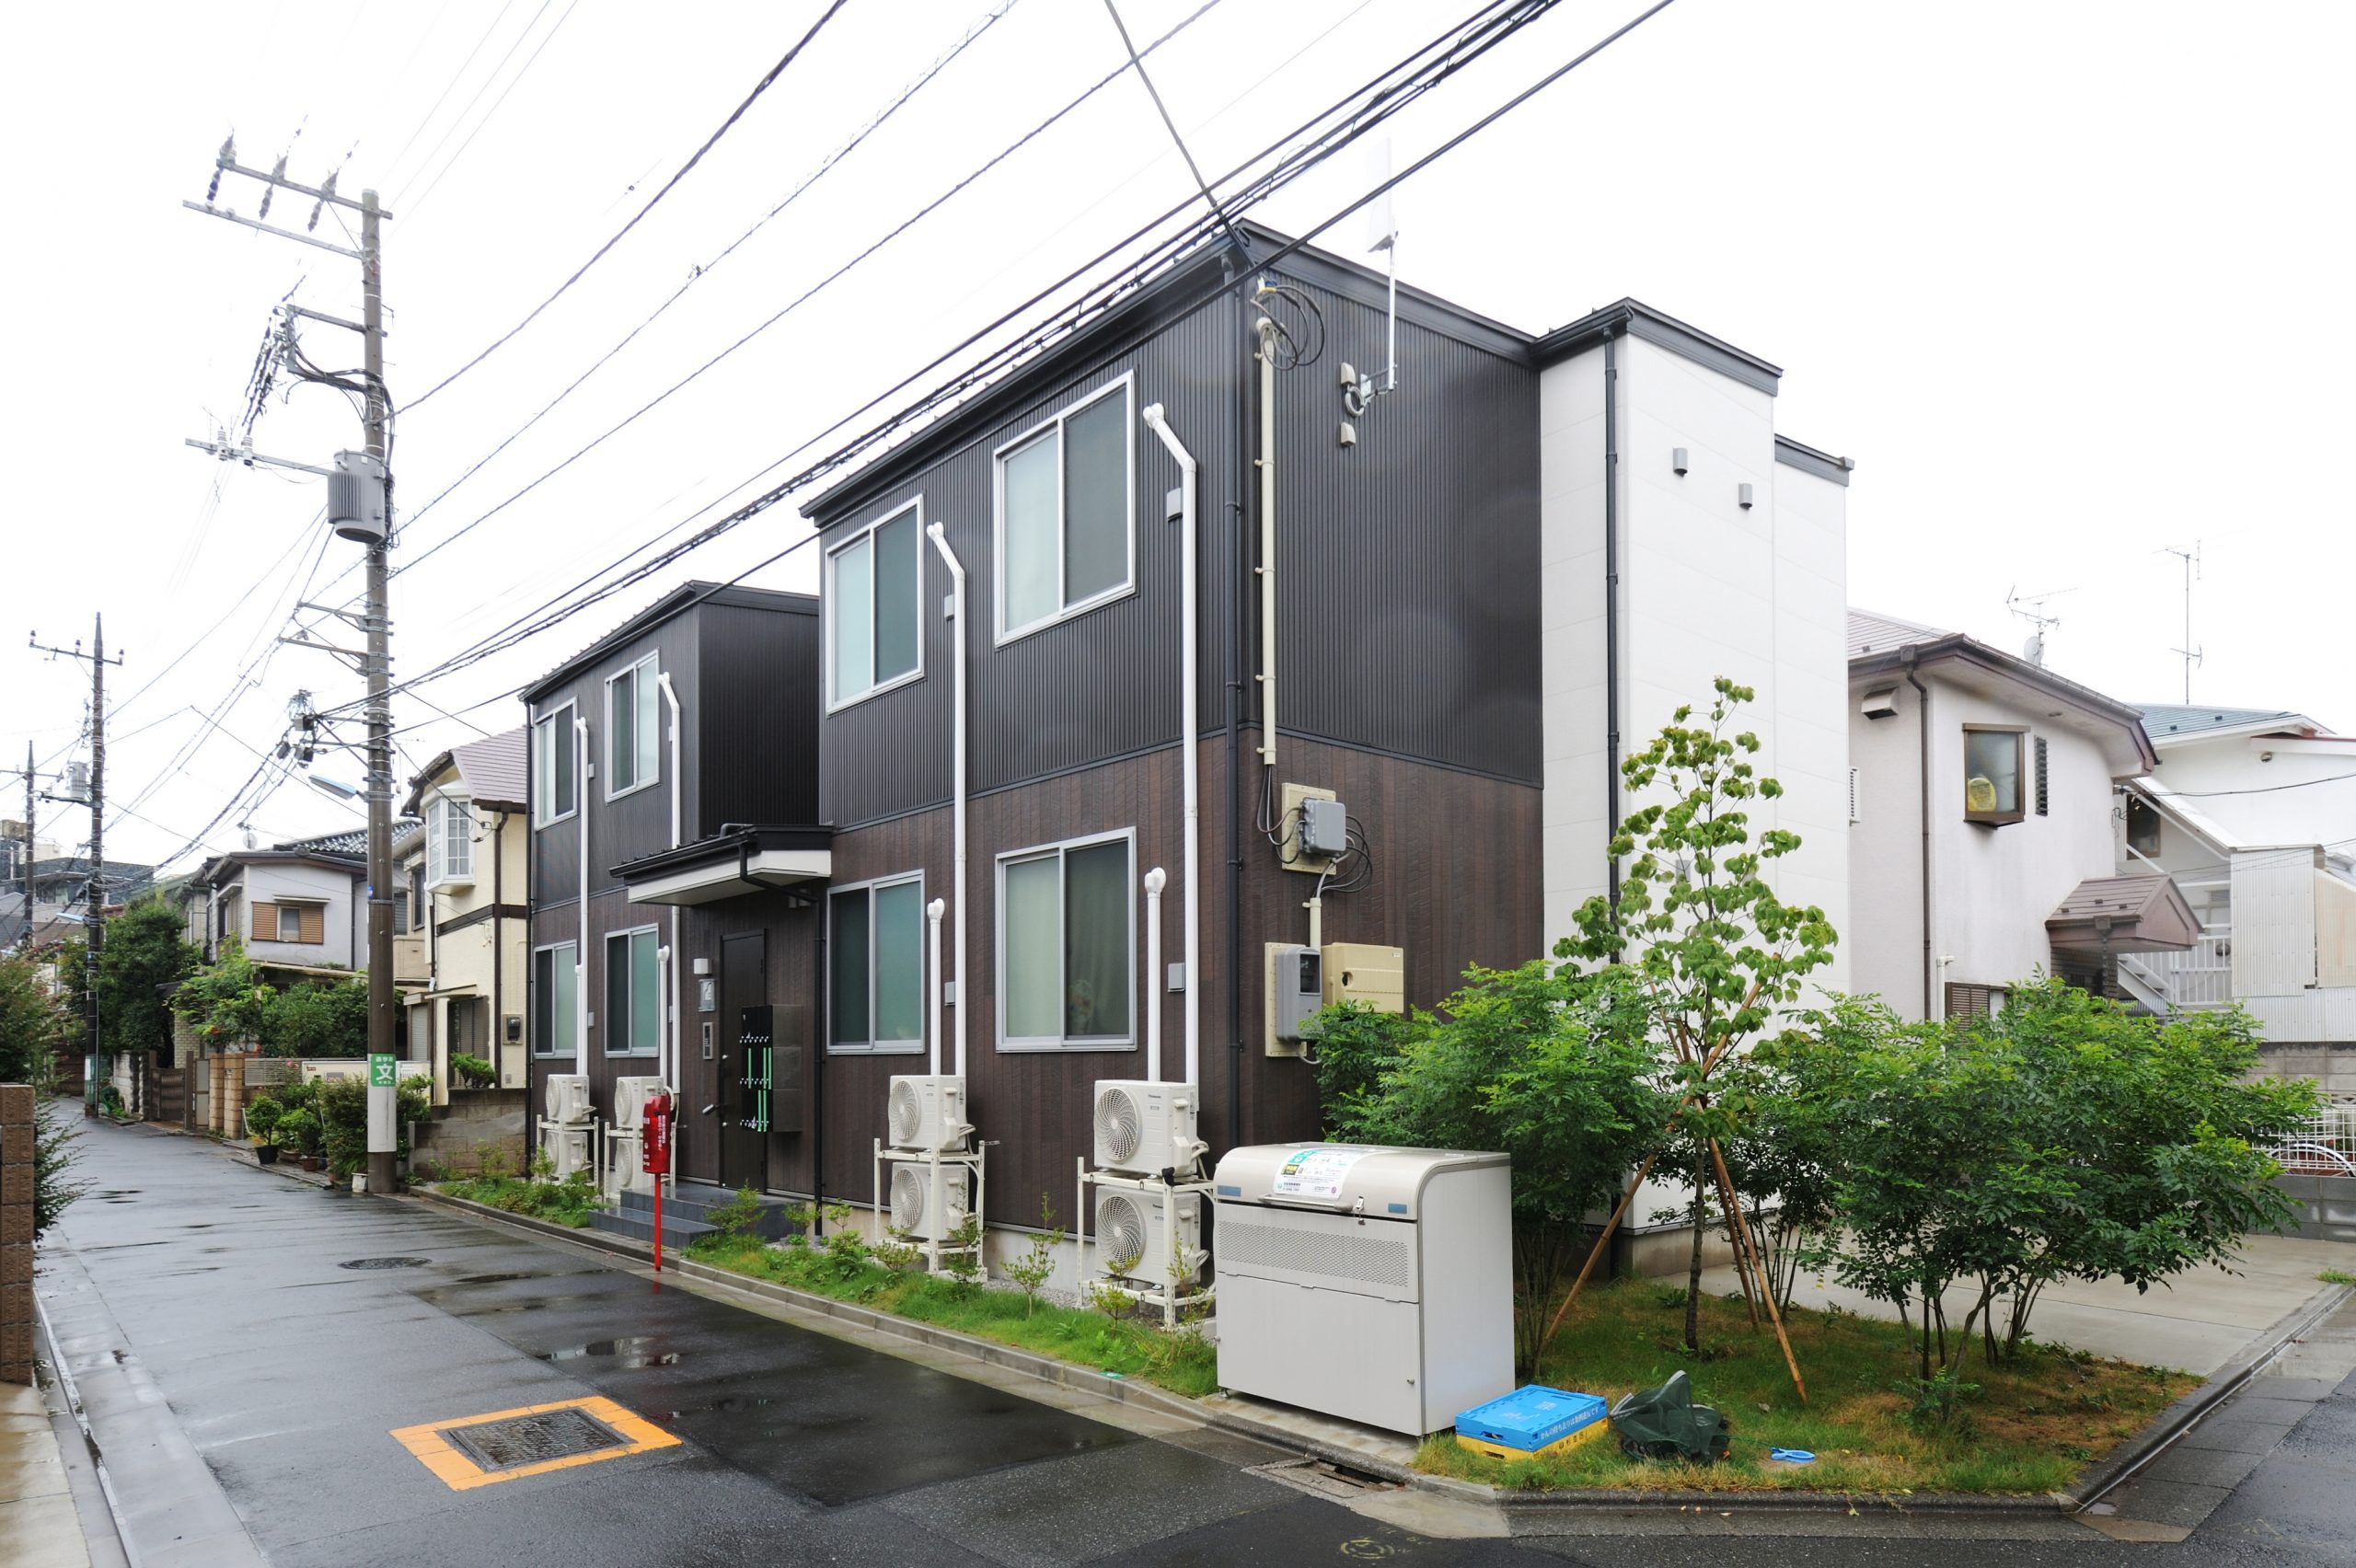 Thủ tục thuê nhà tại Tokyo cần có nhiều thông tin liên quan và người bảo lãnh